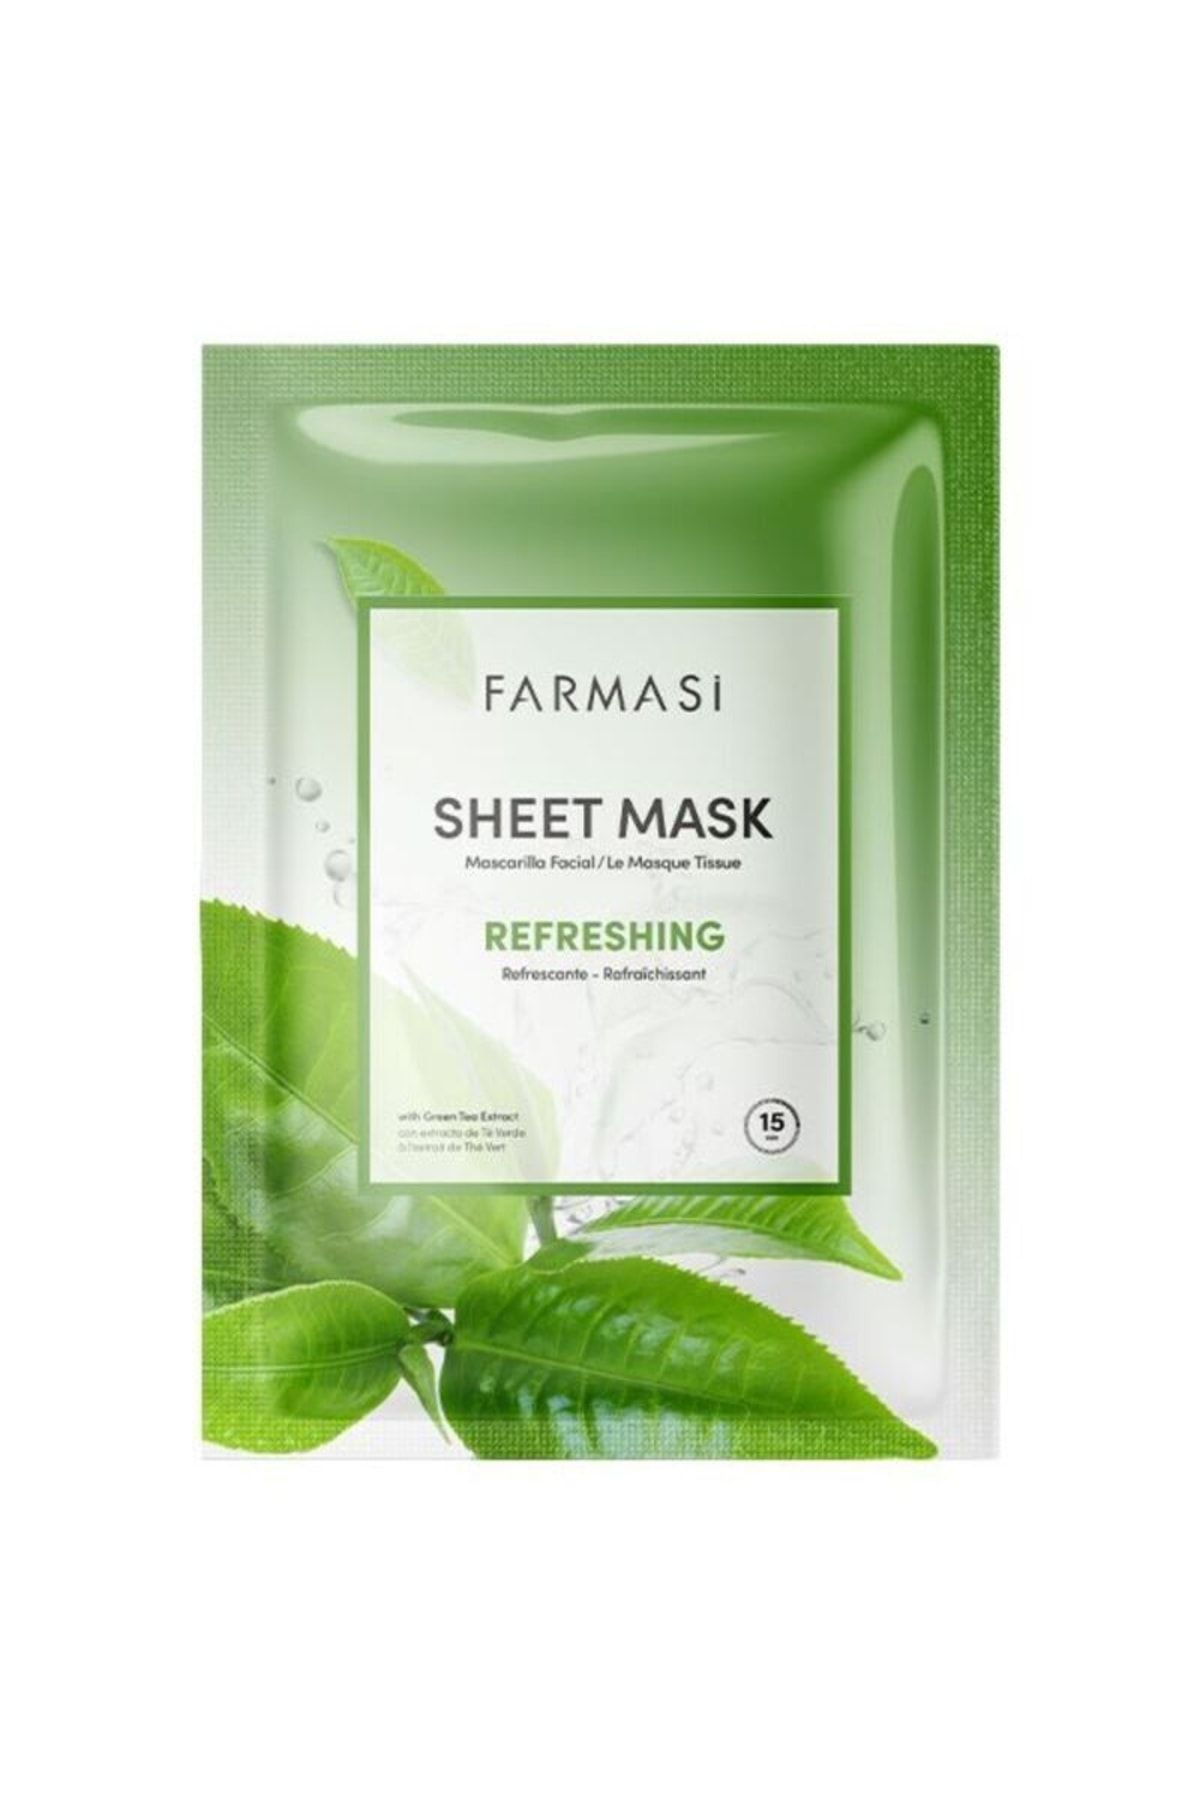 Farmasi Yeşil Çaylı Yenileyici Kağıt Maske